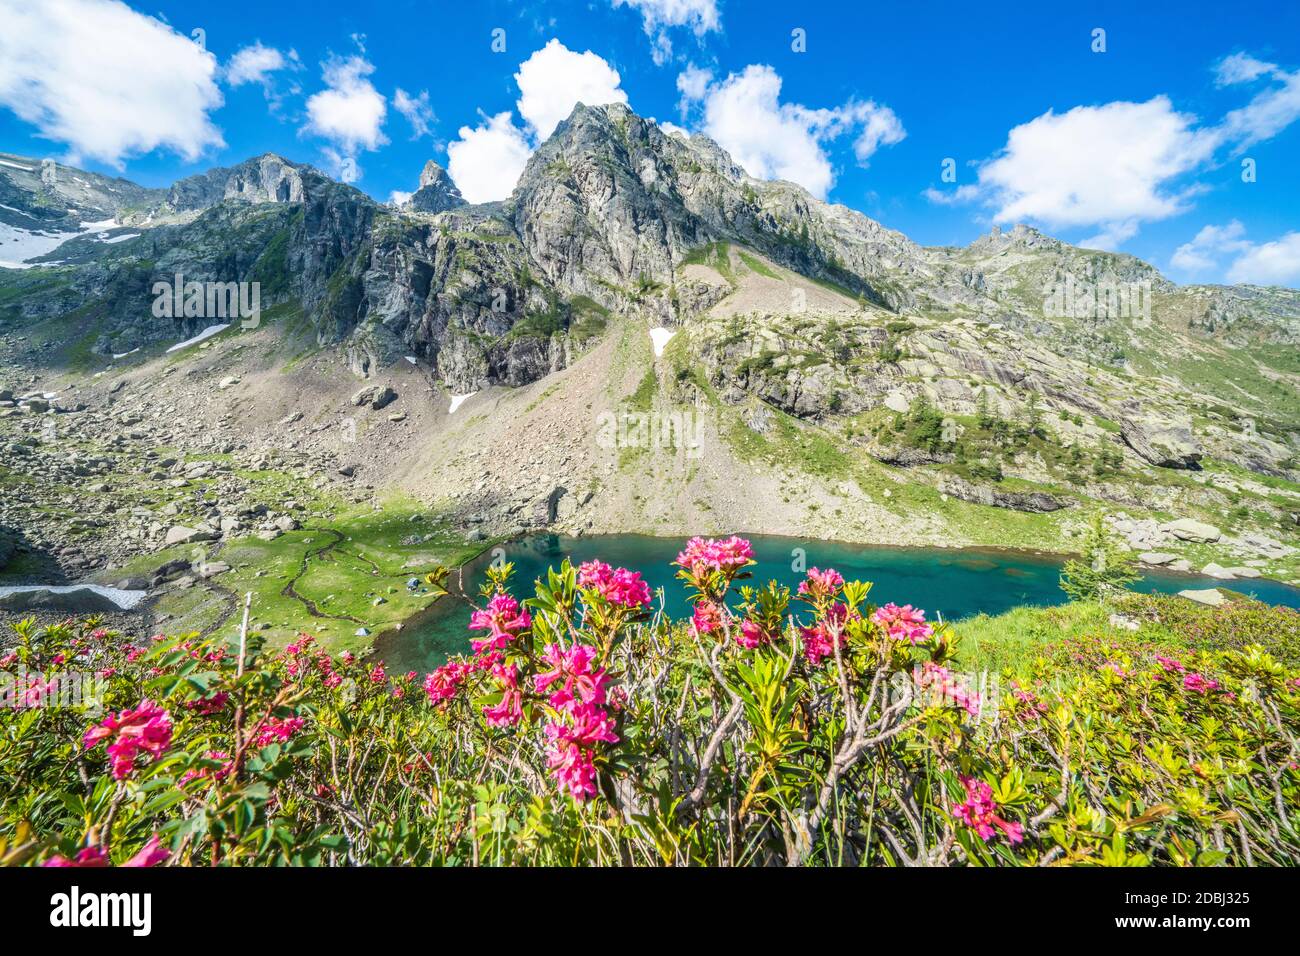 Sommerhimmel über Berggipfeln und Rhododendren, die den See Zancone, Orobie Alps, Valgerola, Valtellina, Lombardei, Italien, Europa umrahmt Stockfoto